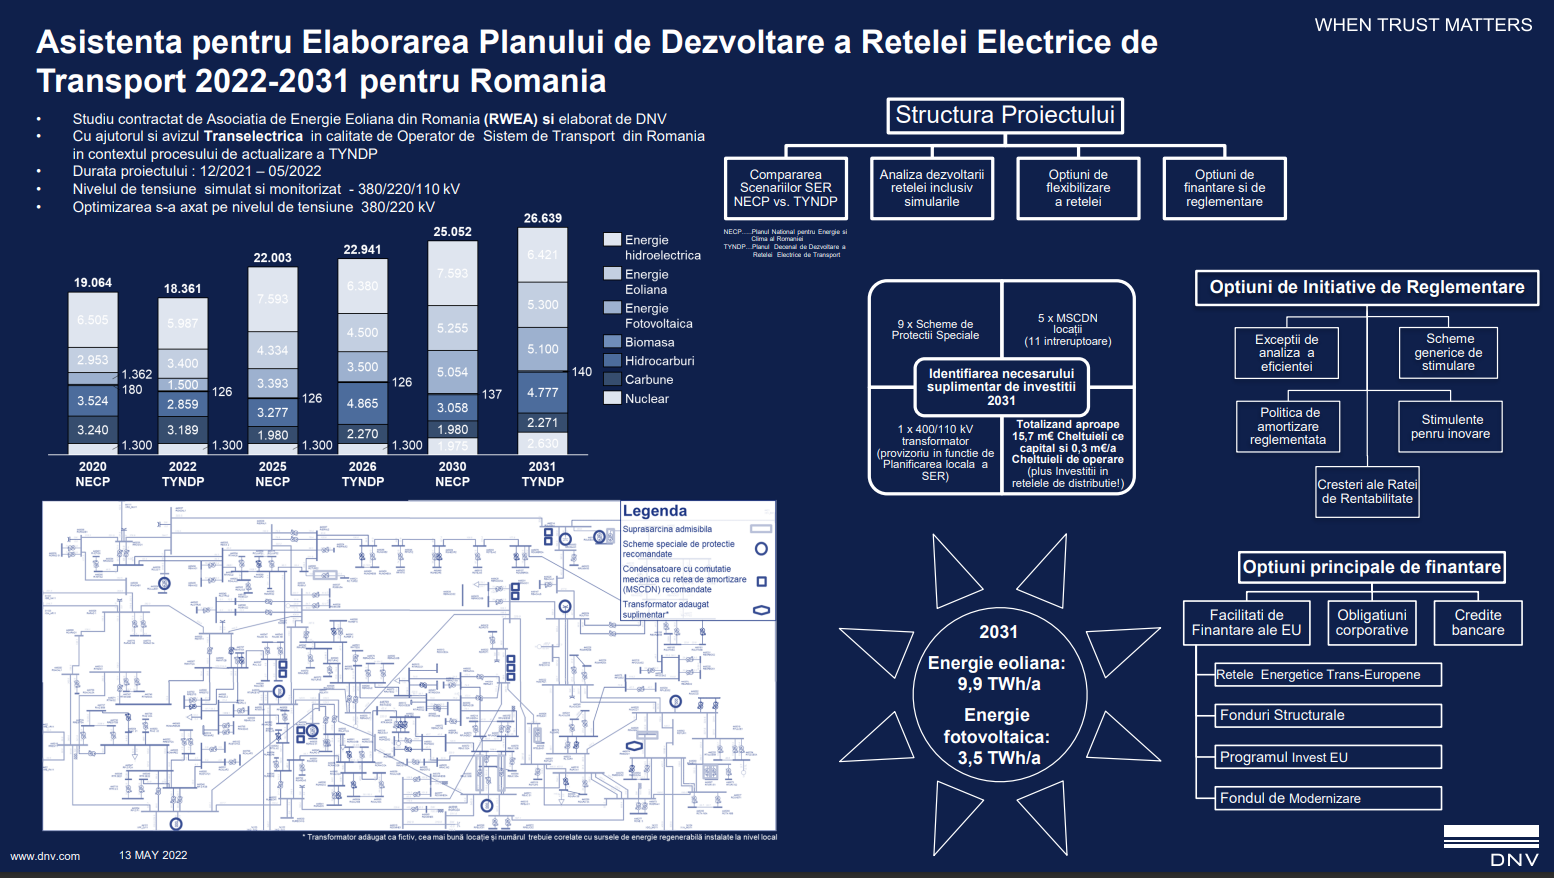 Studiu: EVALUAREA DEZVOLTĂRII STRATEGICE ÎN SECTORUL ENERGIILOR REGENERABILE ÎN ROMÂNIA – Analiza dezvoltării rețelei electrice de transport din România